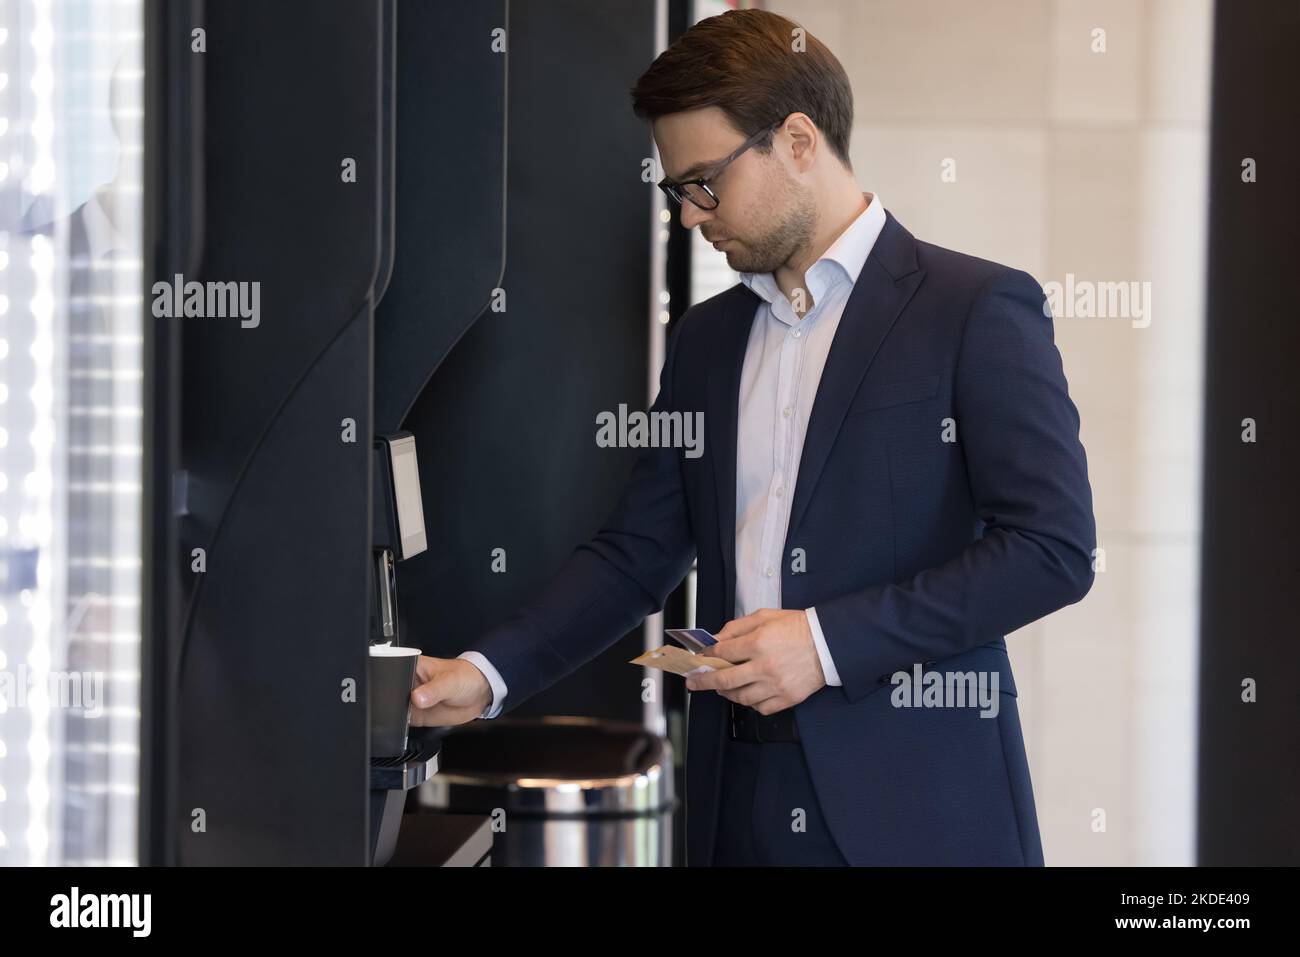 L'homme d'affaires en costume verse le café utilise un distributeur automatique dans le bureau Banque D'Images